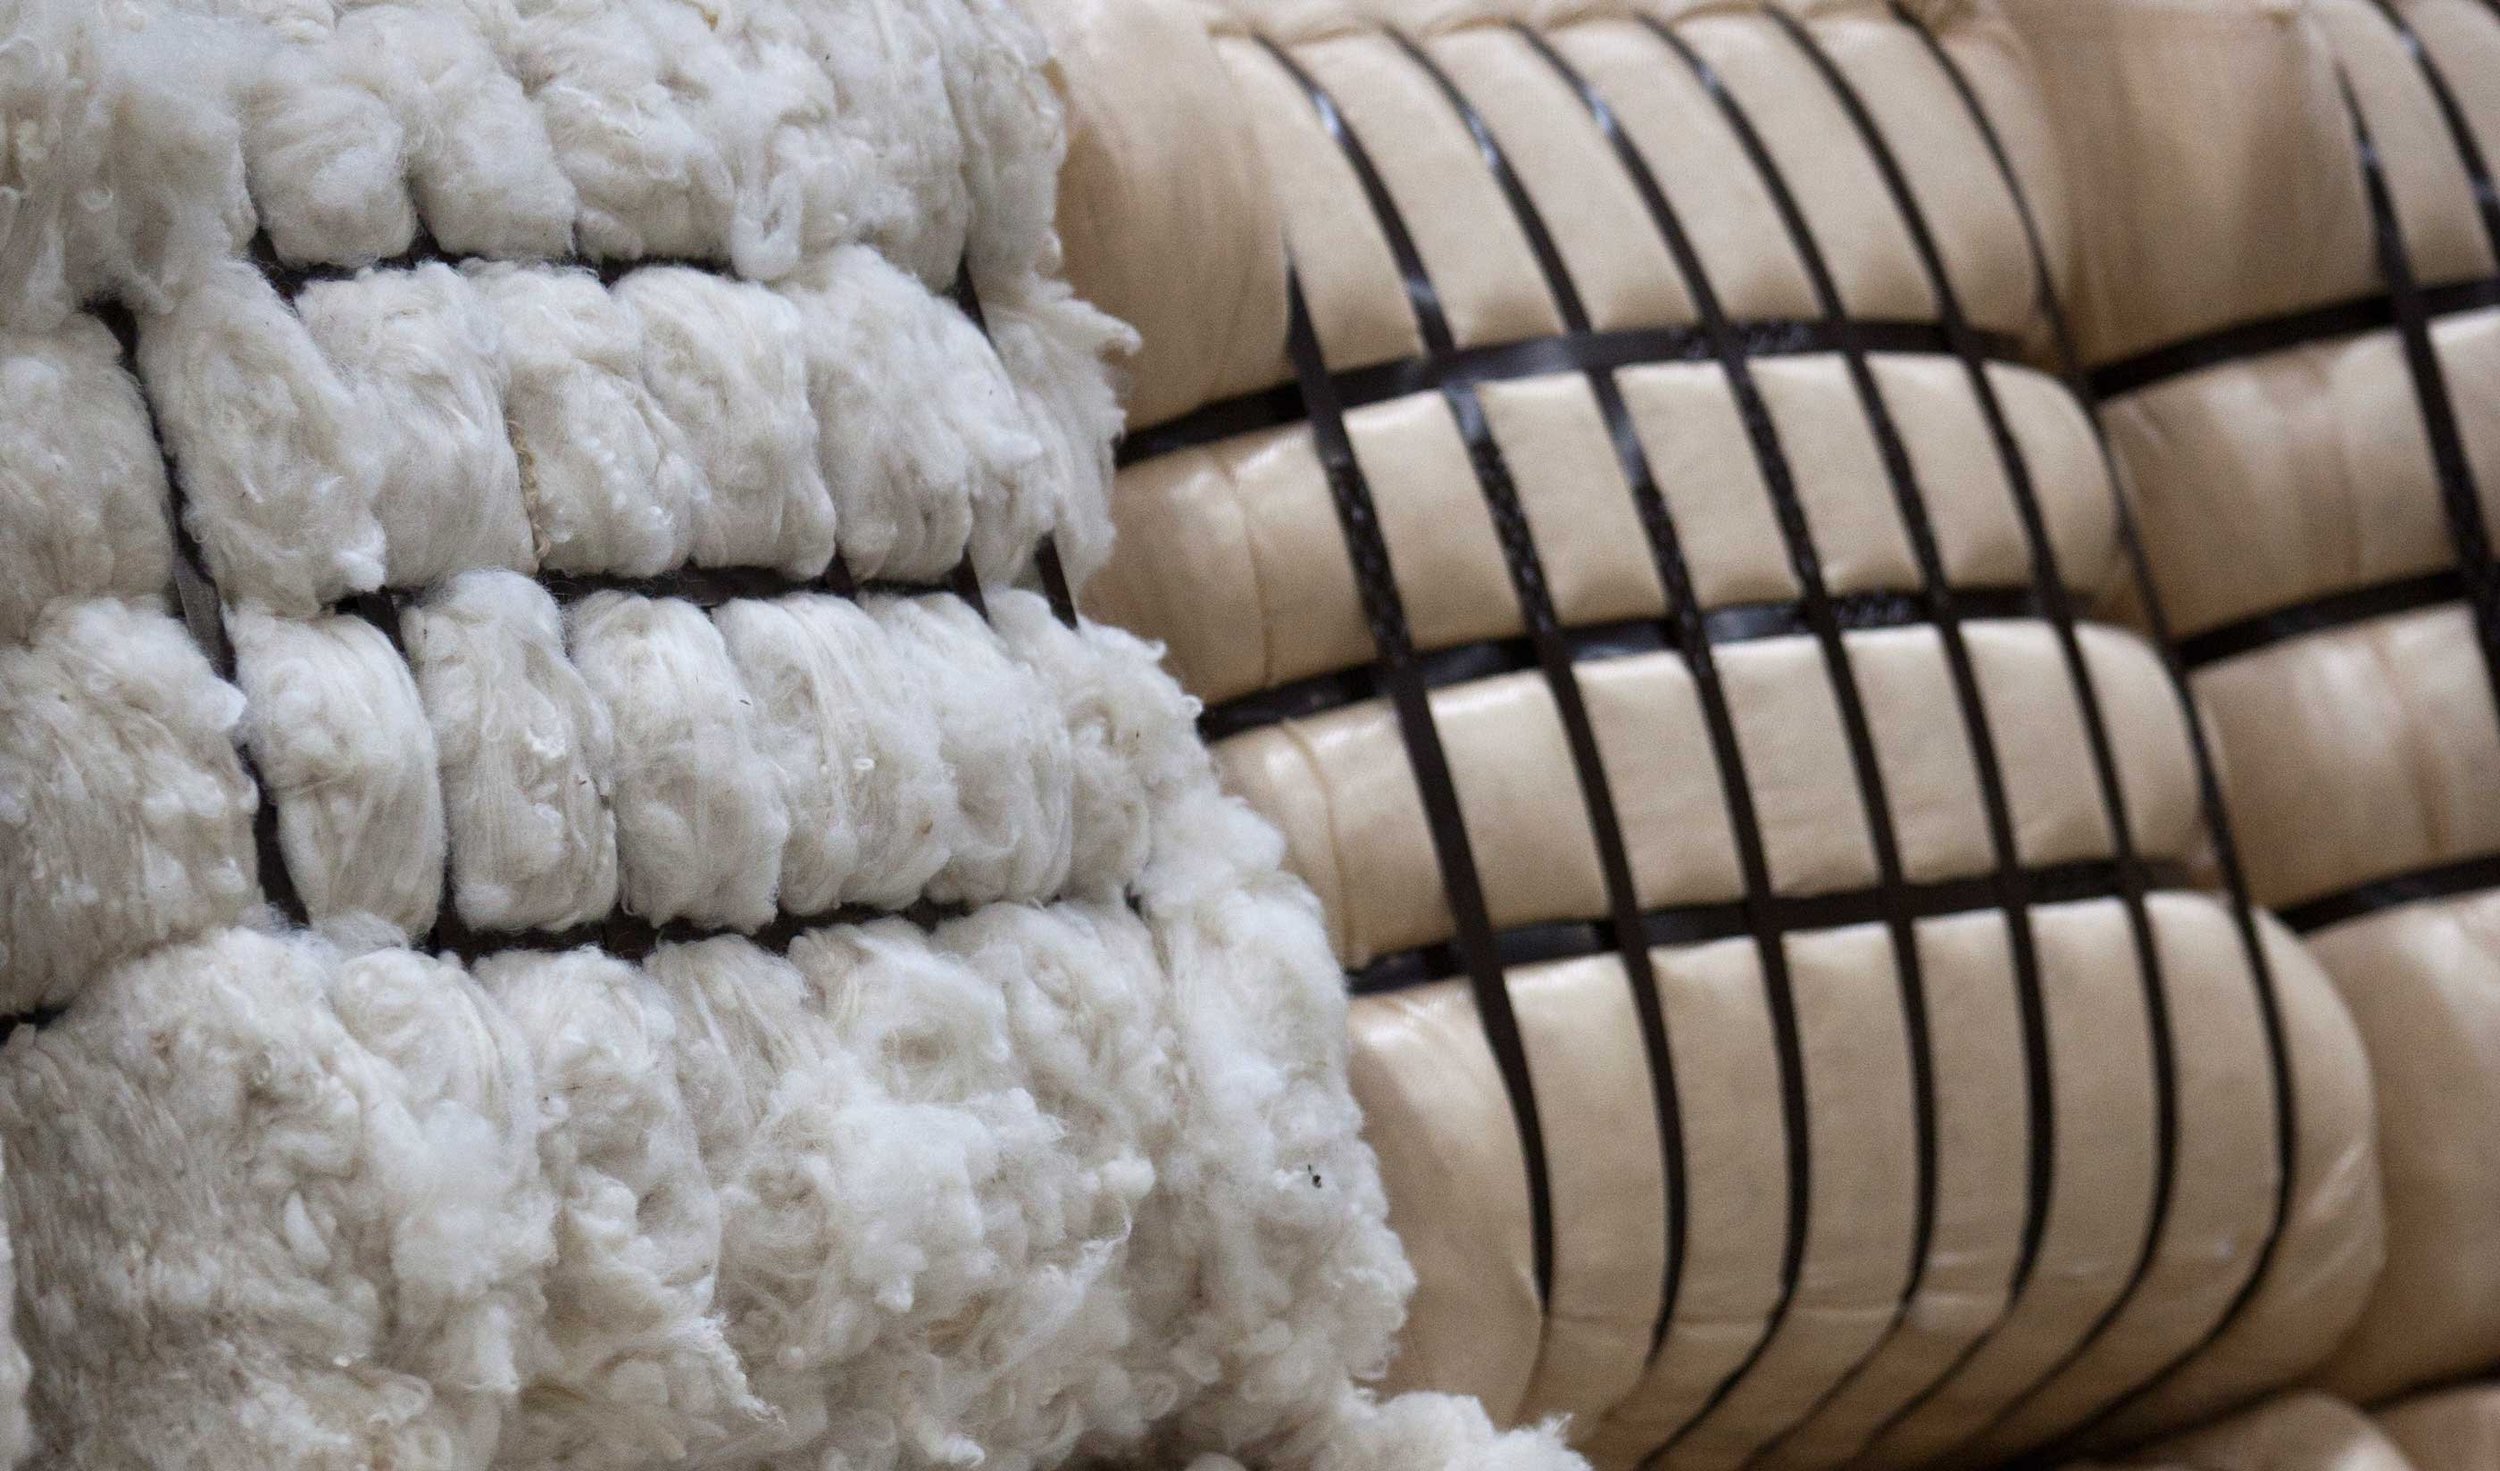 Customs duty on wool was removed in Kazakhstan